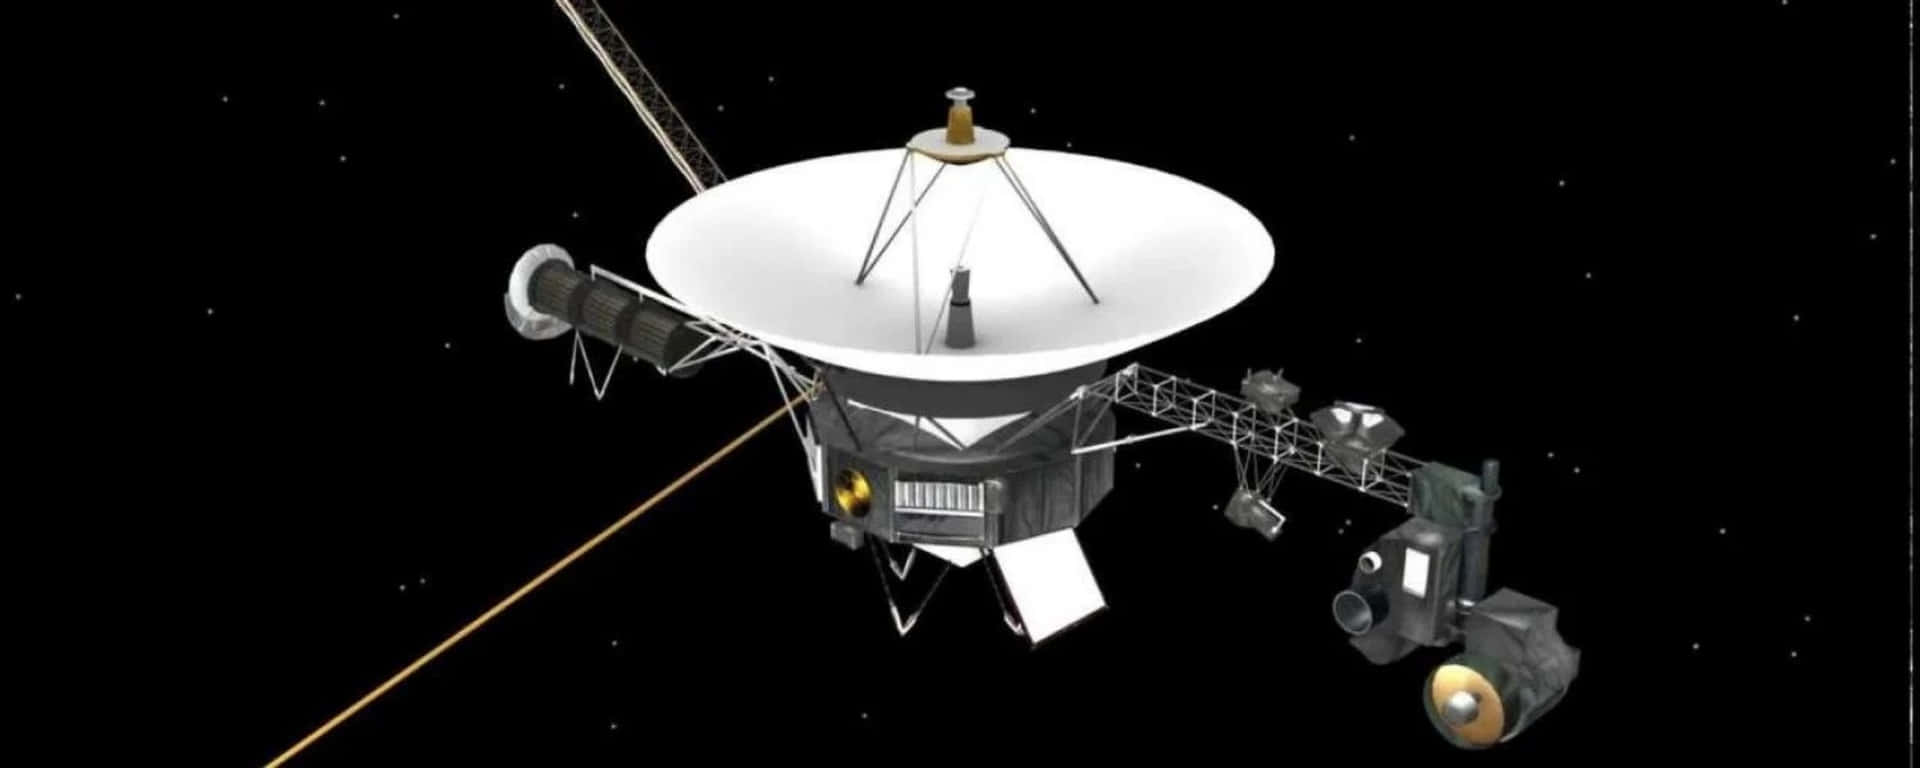 Läsmer Om Voyager-uppdraget När Vi Utforskar Rymden Djupt.